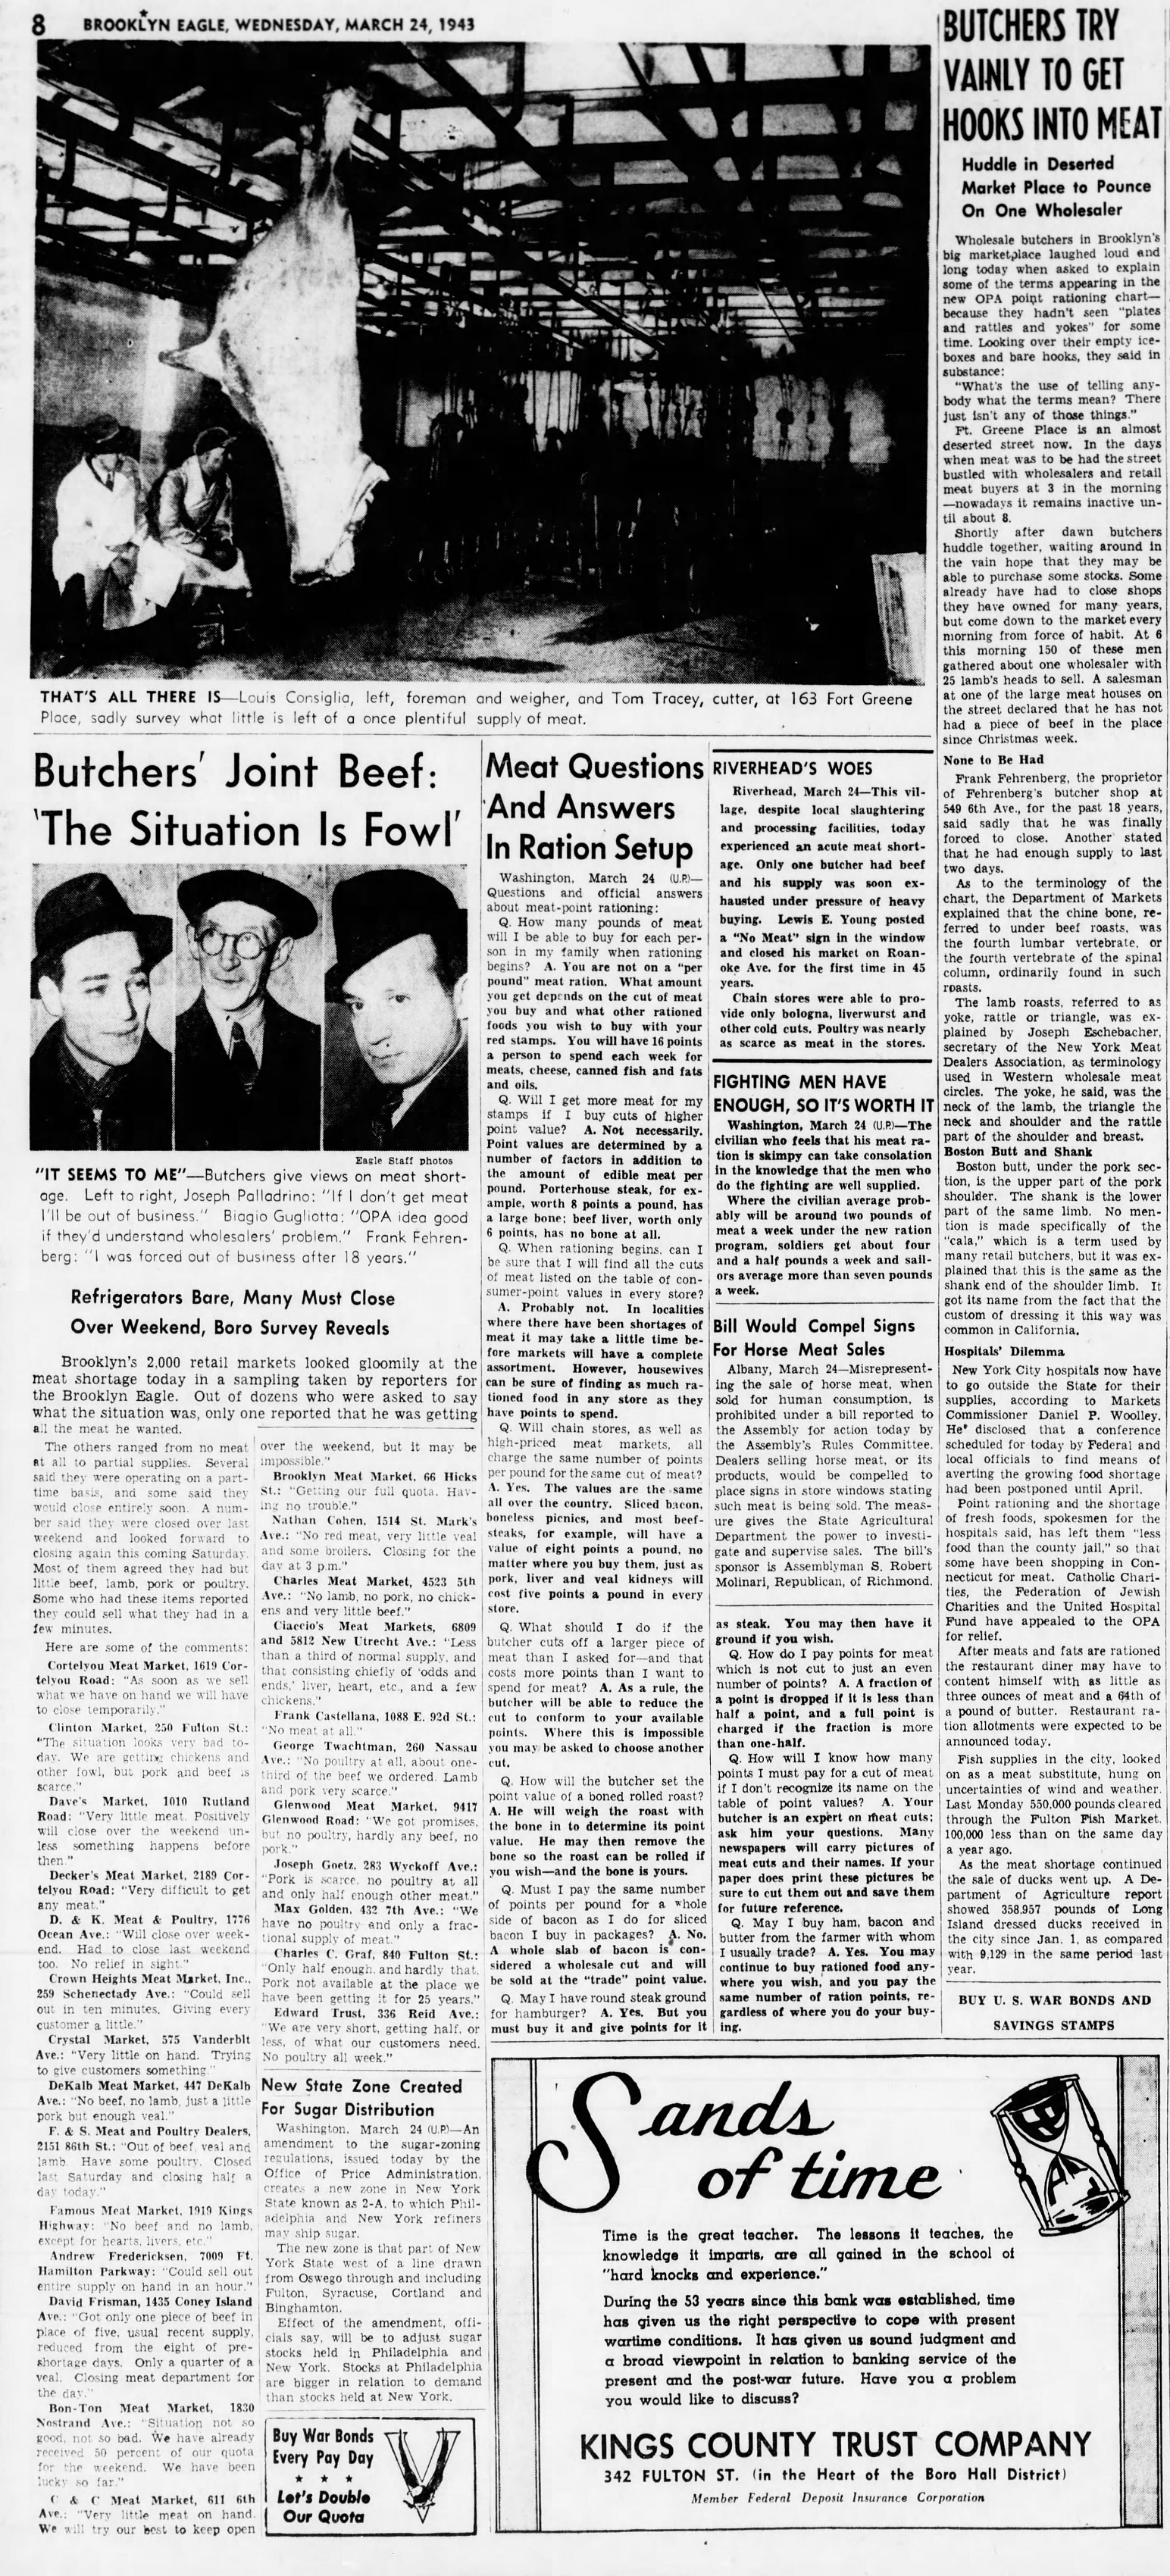 The_Brooklyn_Daily_Eagle_Wed__Mar_24__1943_(9).jpg